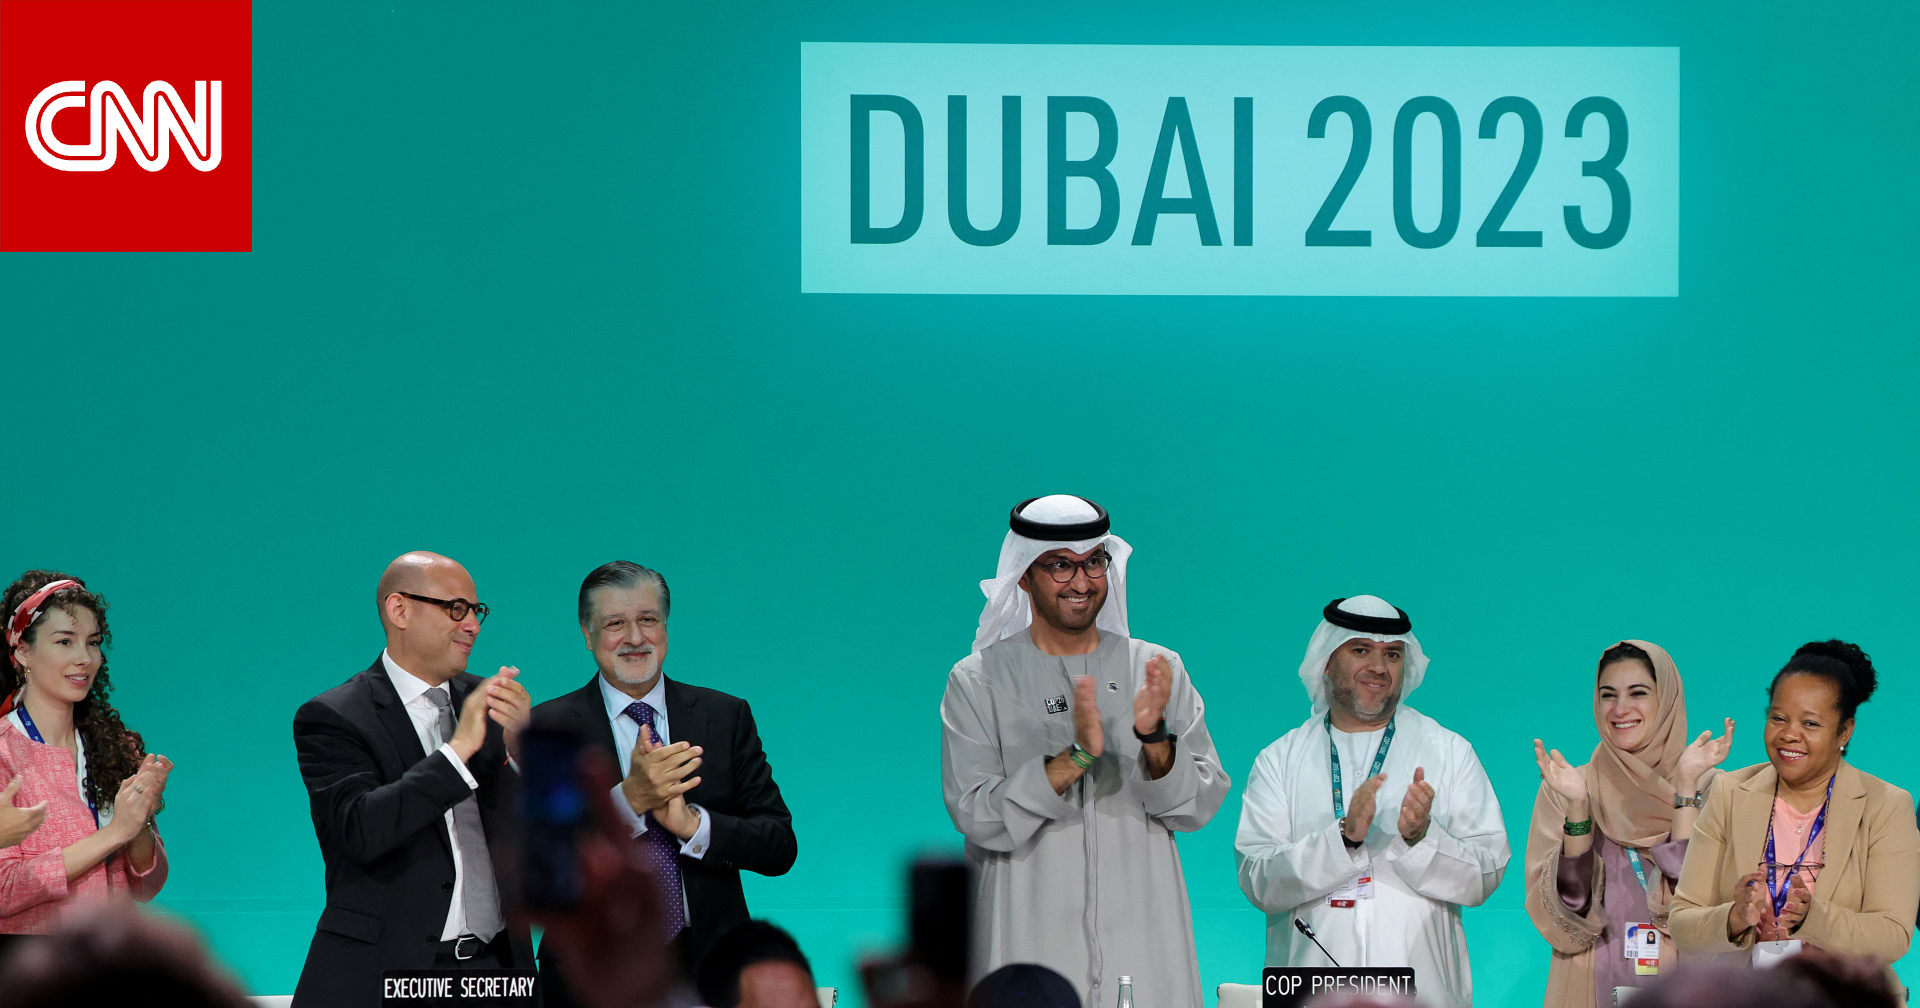 الدول المشاركة في "كوب 28" تُقر "اتفاق الإمارات" للعمل المناخي.. وسلطان الجابر يُعلق: "تاريخي"